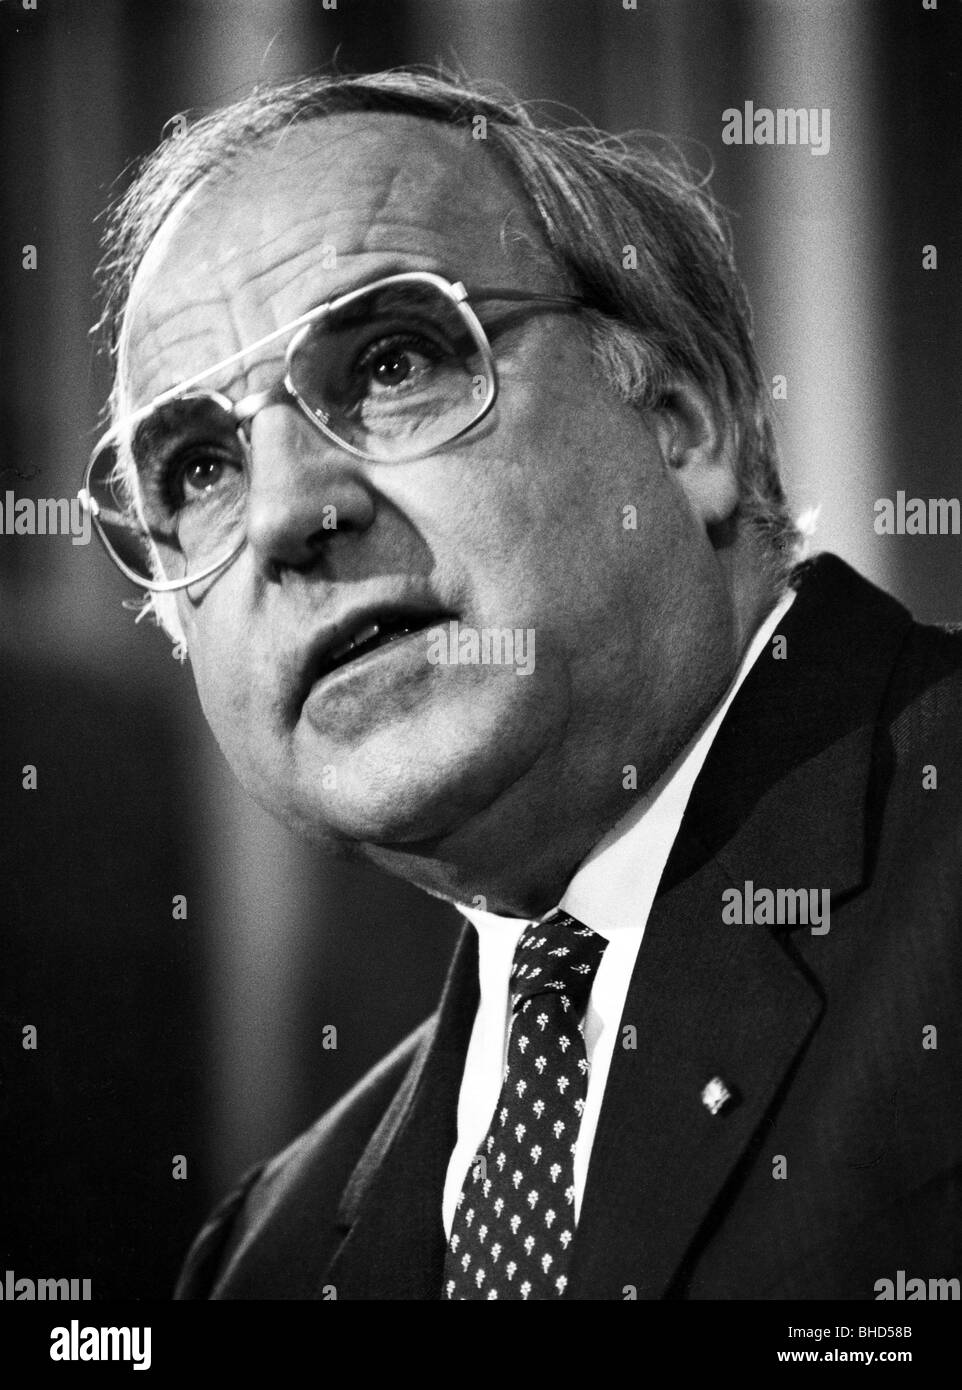 Kohl, Helmut, * 3.4.1930, politicien allemand (CDU), portrait, chancelier de la République fédérale d'Allemagne, 1984, Banque D'Images